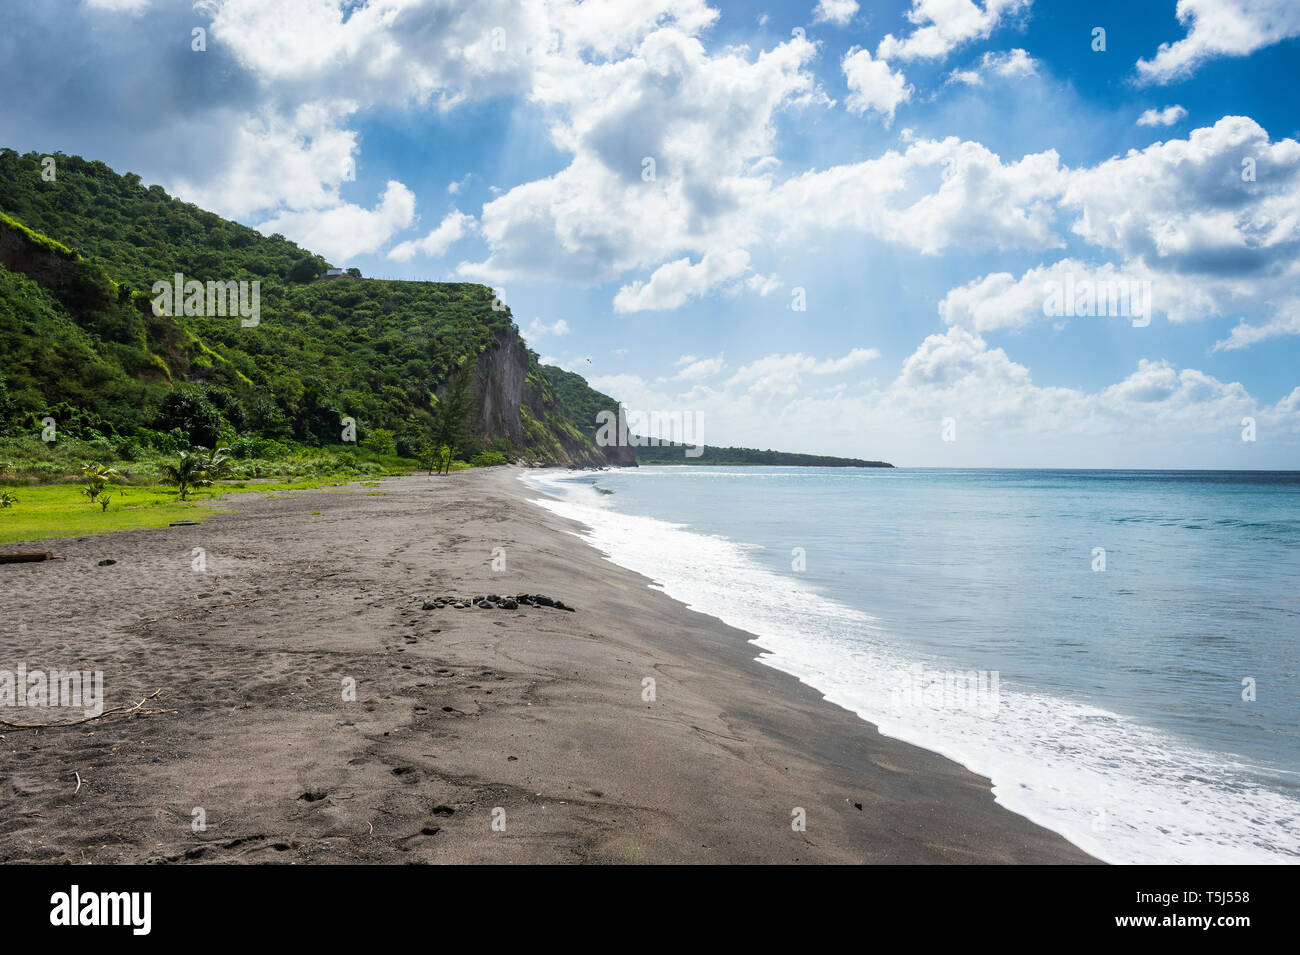 British territorio di oltremare, Montserrat, sulla spiaggia vulcanica Foto Stock